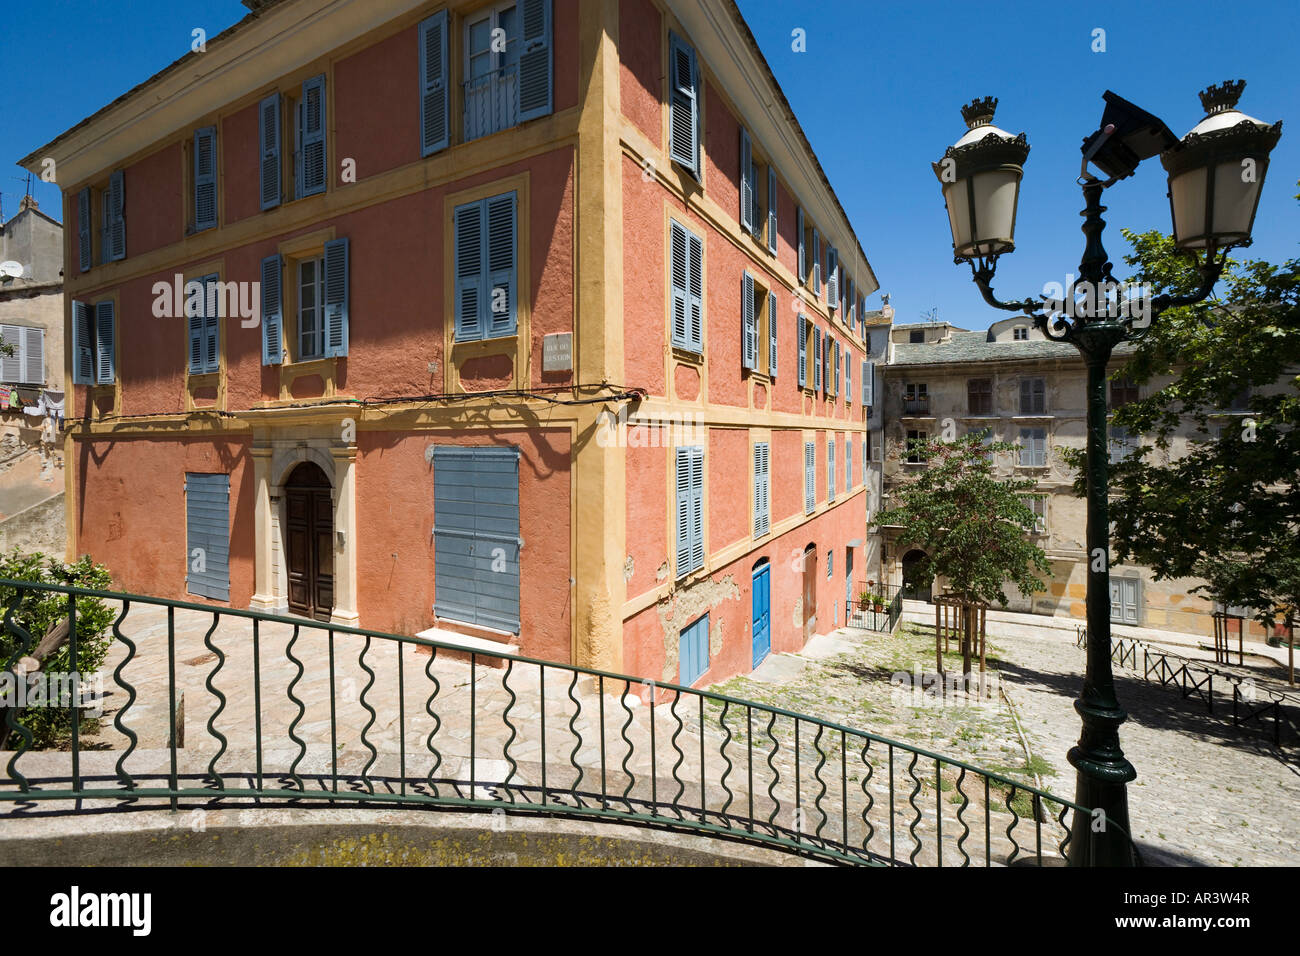 Bâtiment typique dans le quartier de Terra Nova, près de la Citadelle, Bastia, Corse, France Banque D'Images